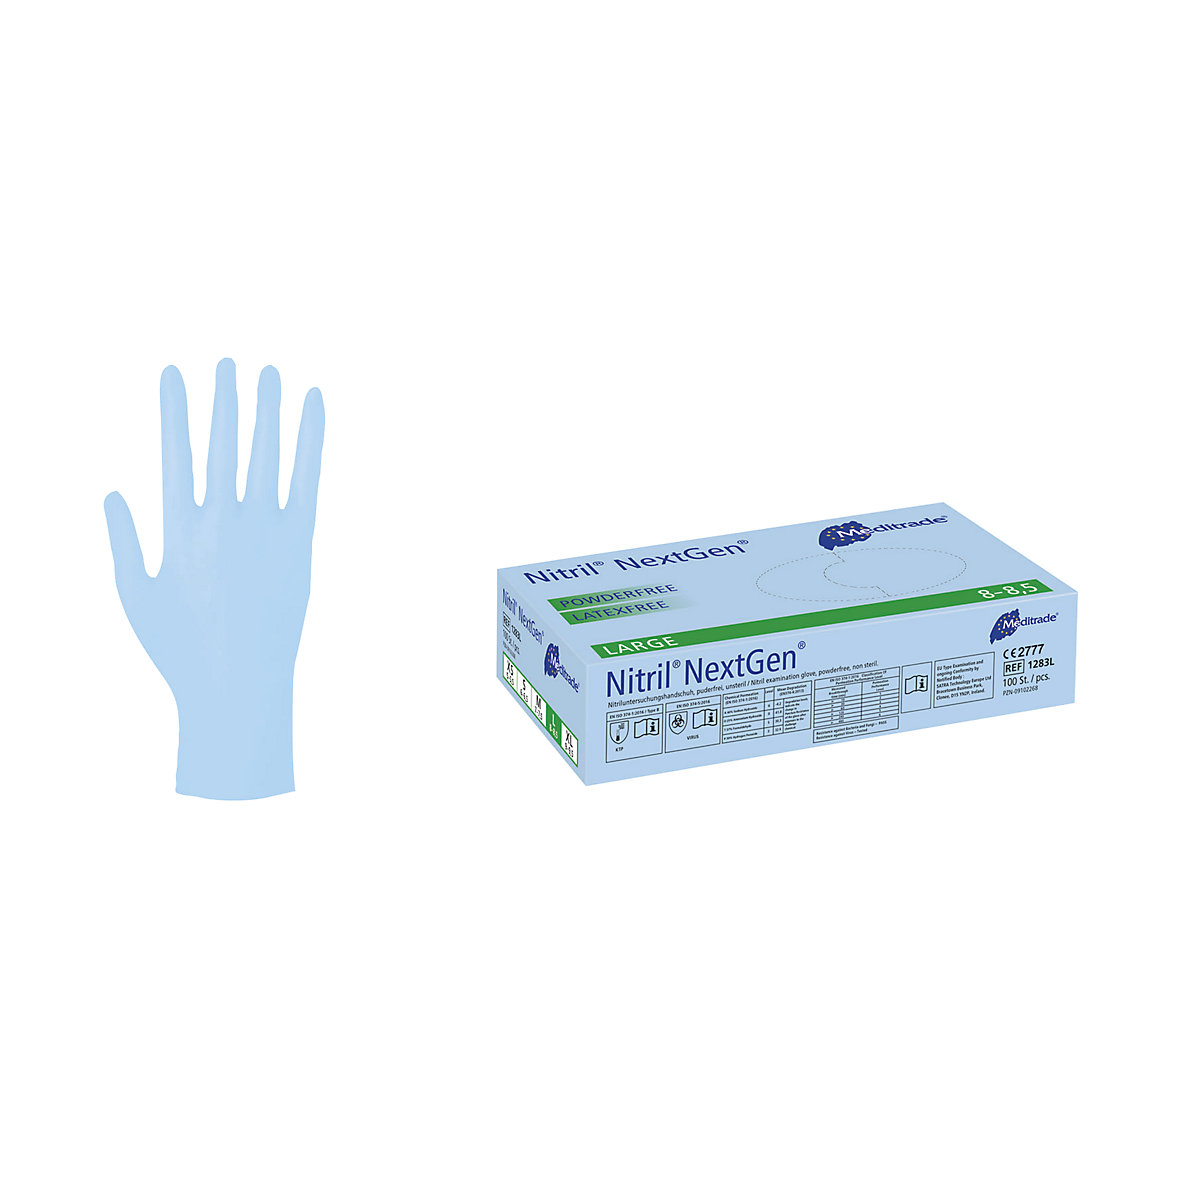 Nitrilne rokavice za enkratno uporabo Meditrade, DE 1000 kosov, primerno za uporabo z živili, modre barve, velikost L, od 10 DE-1